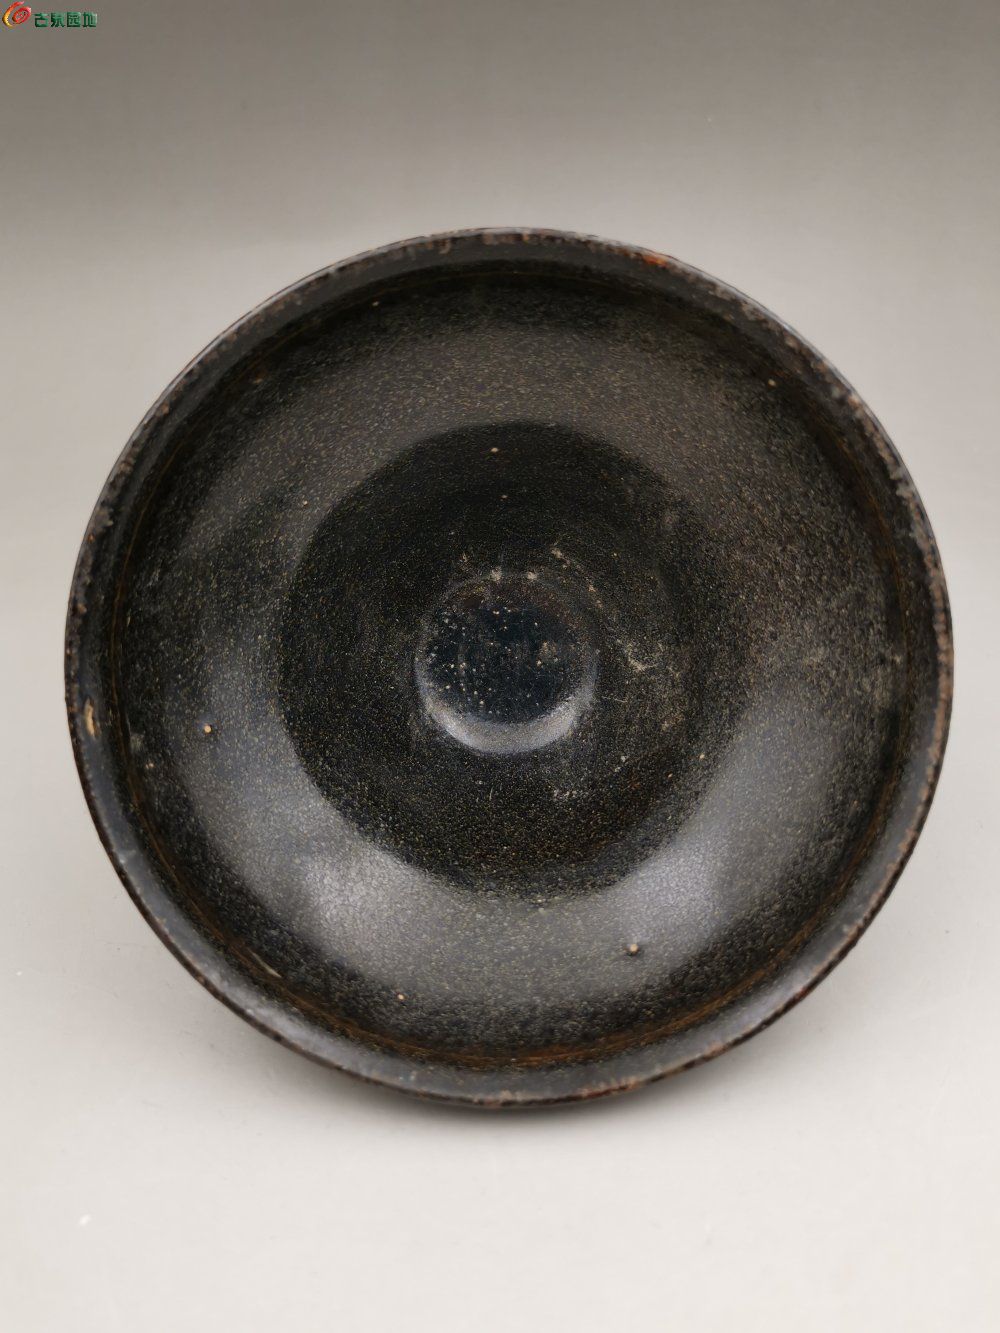 宋代黑瓷碗图片